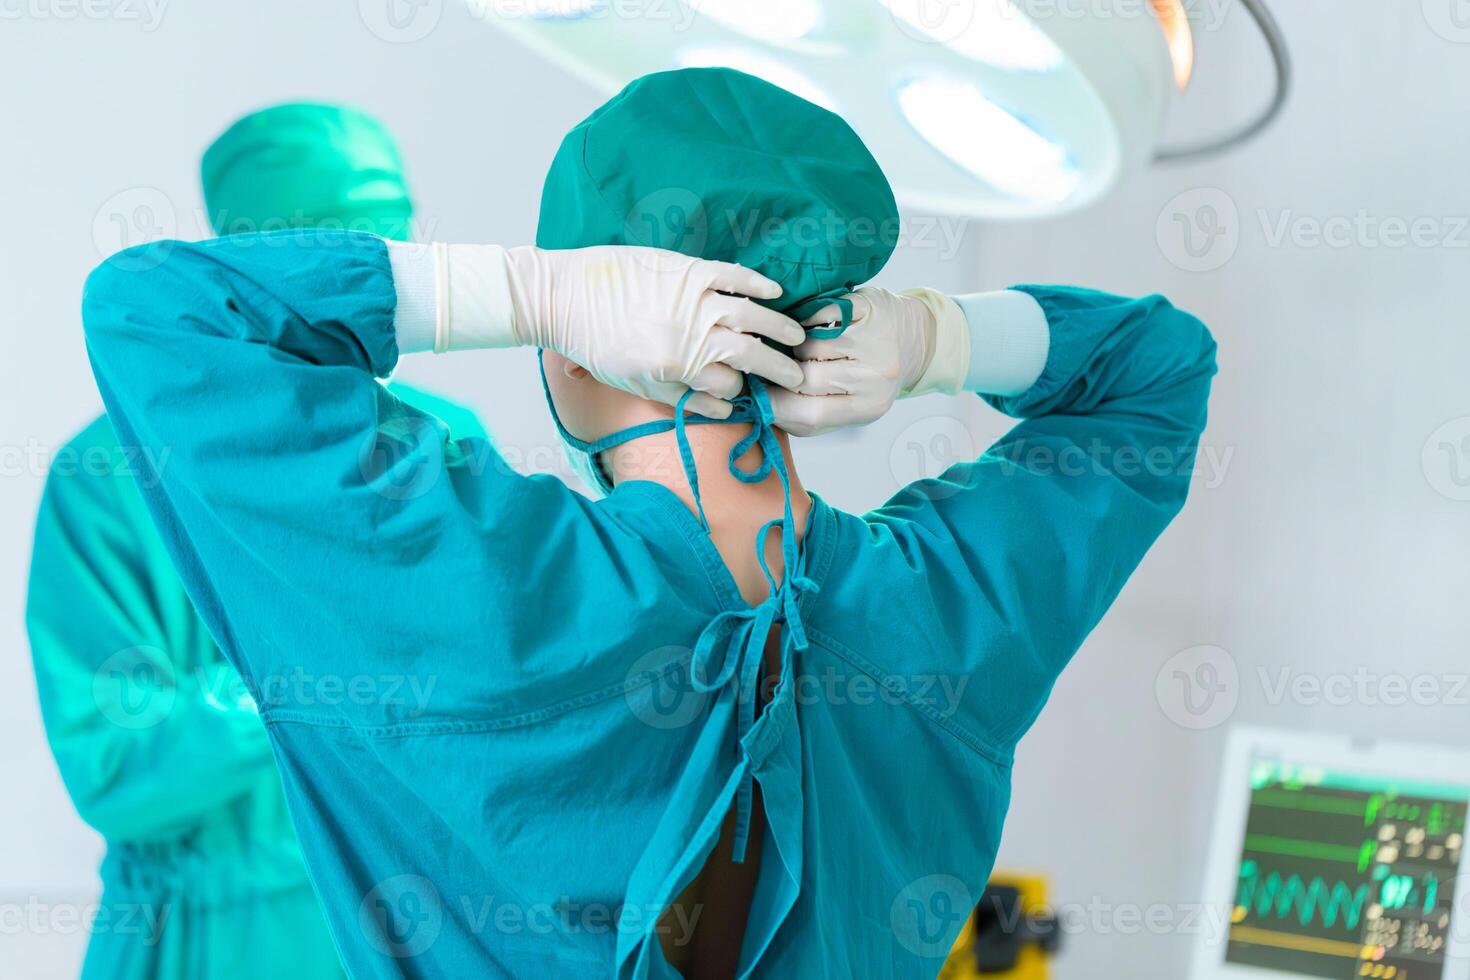 chirurgo di squadra al lavoro in sala operatoria, vista posteriore del chirurgo che lega il cappuccio chirurgico in preparazione, squadra medica che esegue un intervento chirurgico in sala operatoria foto